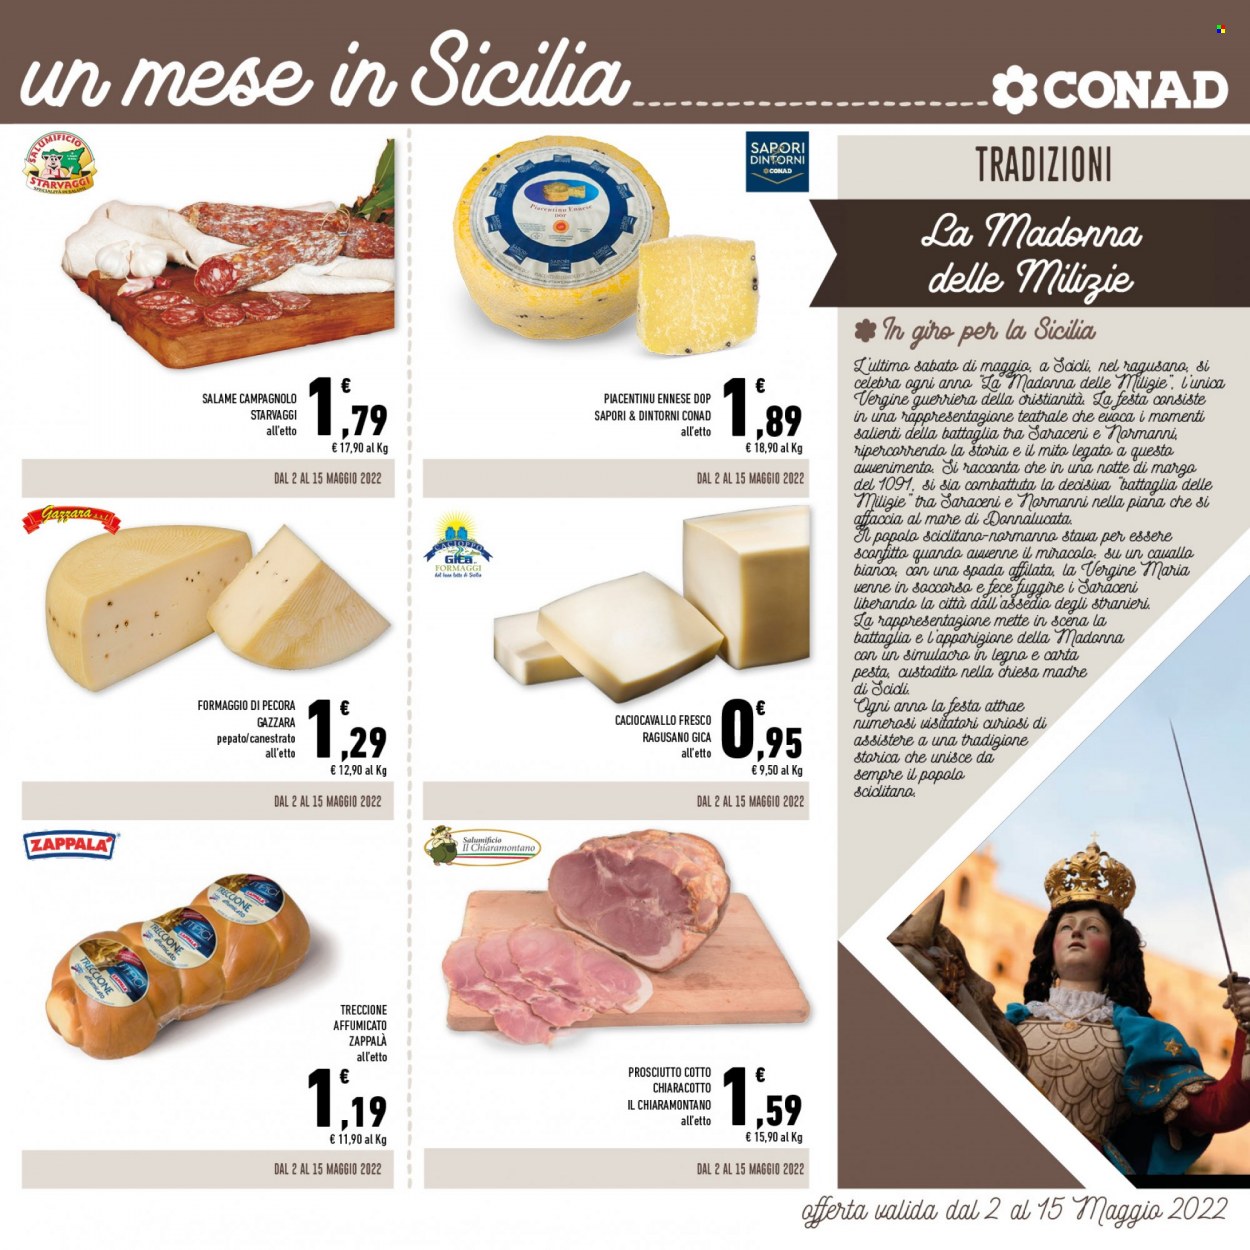 thumbnail - Volantino Conad - 2/5/2022 - 31/5/2022 - Prodotti in offerta - prosciutto, salame, prosciutto cotto, formaggio, caciocavallo, canestrato, Zappalá, treccione. Pagina 3.